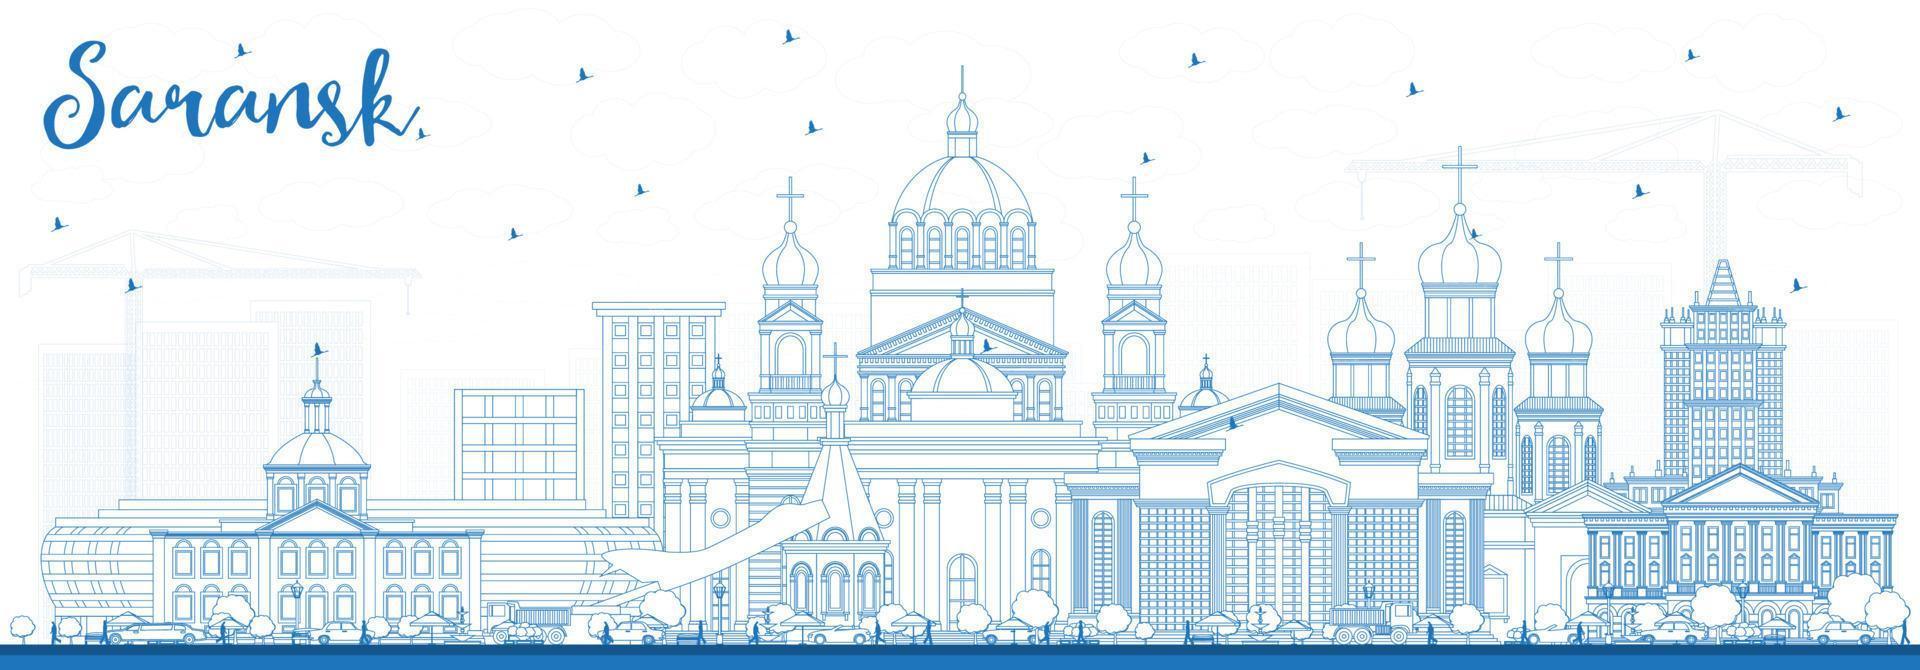 delinear el horizonte de la ciudad de saransk rusia con edificios azules. vector